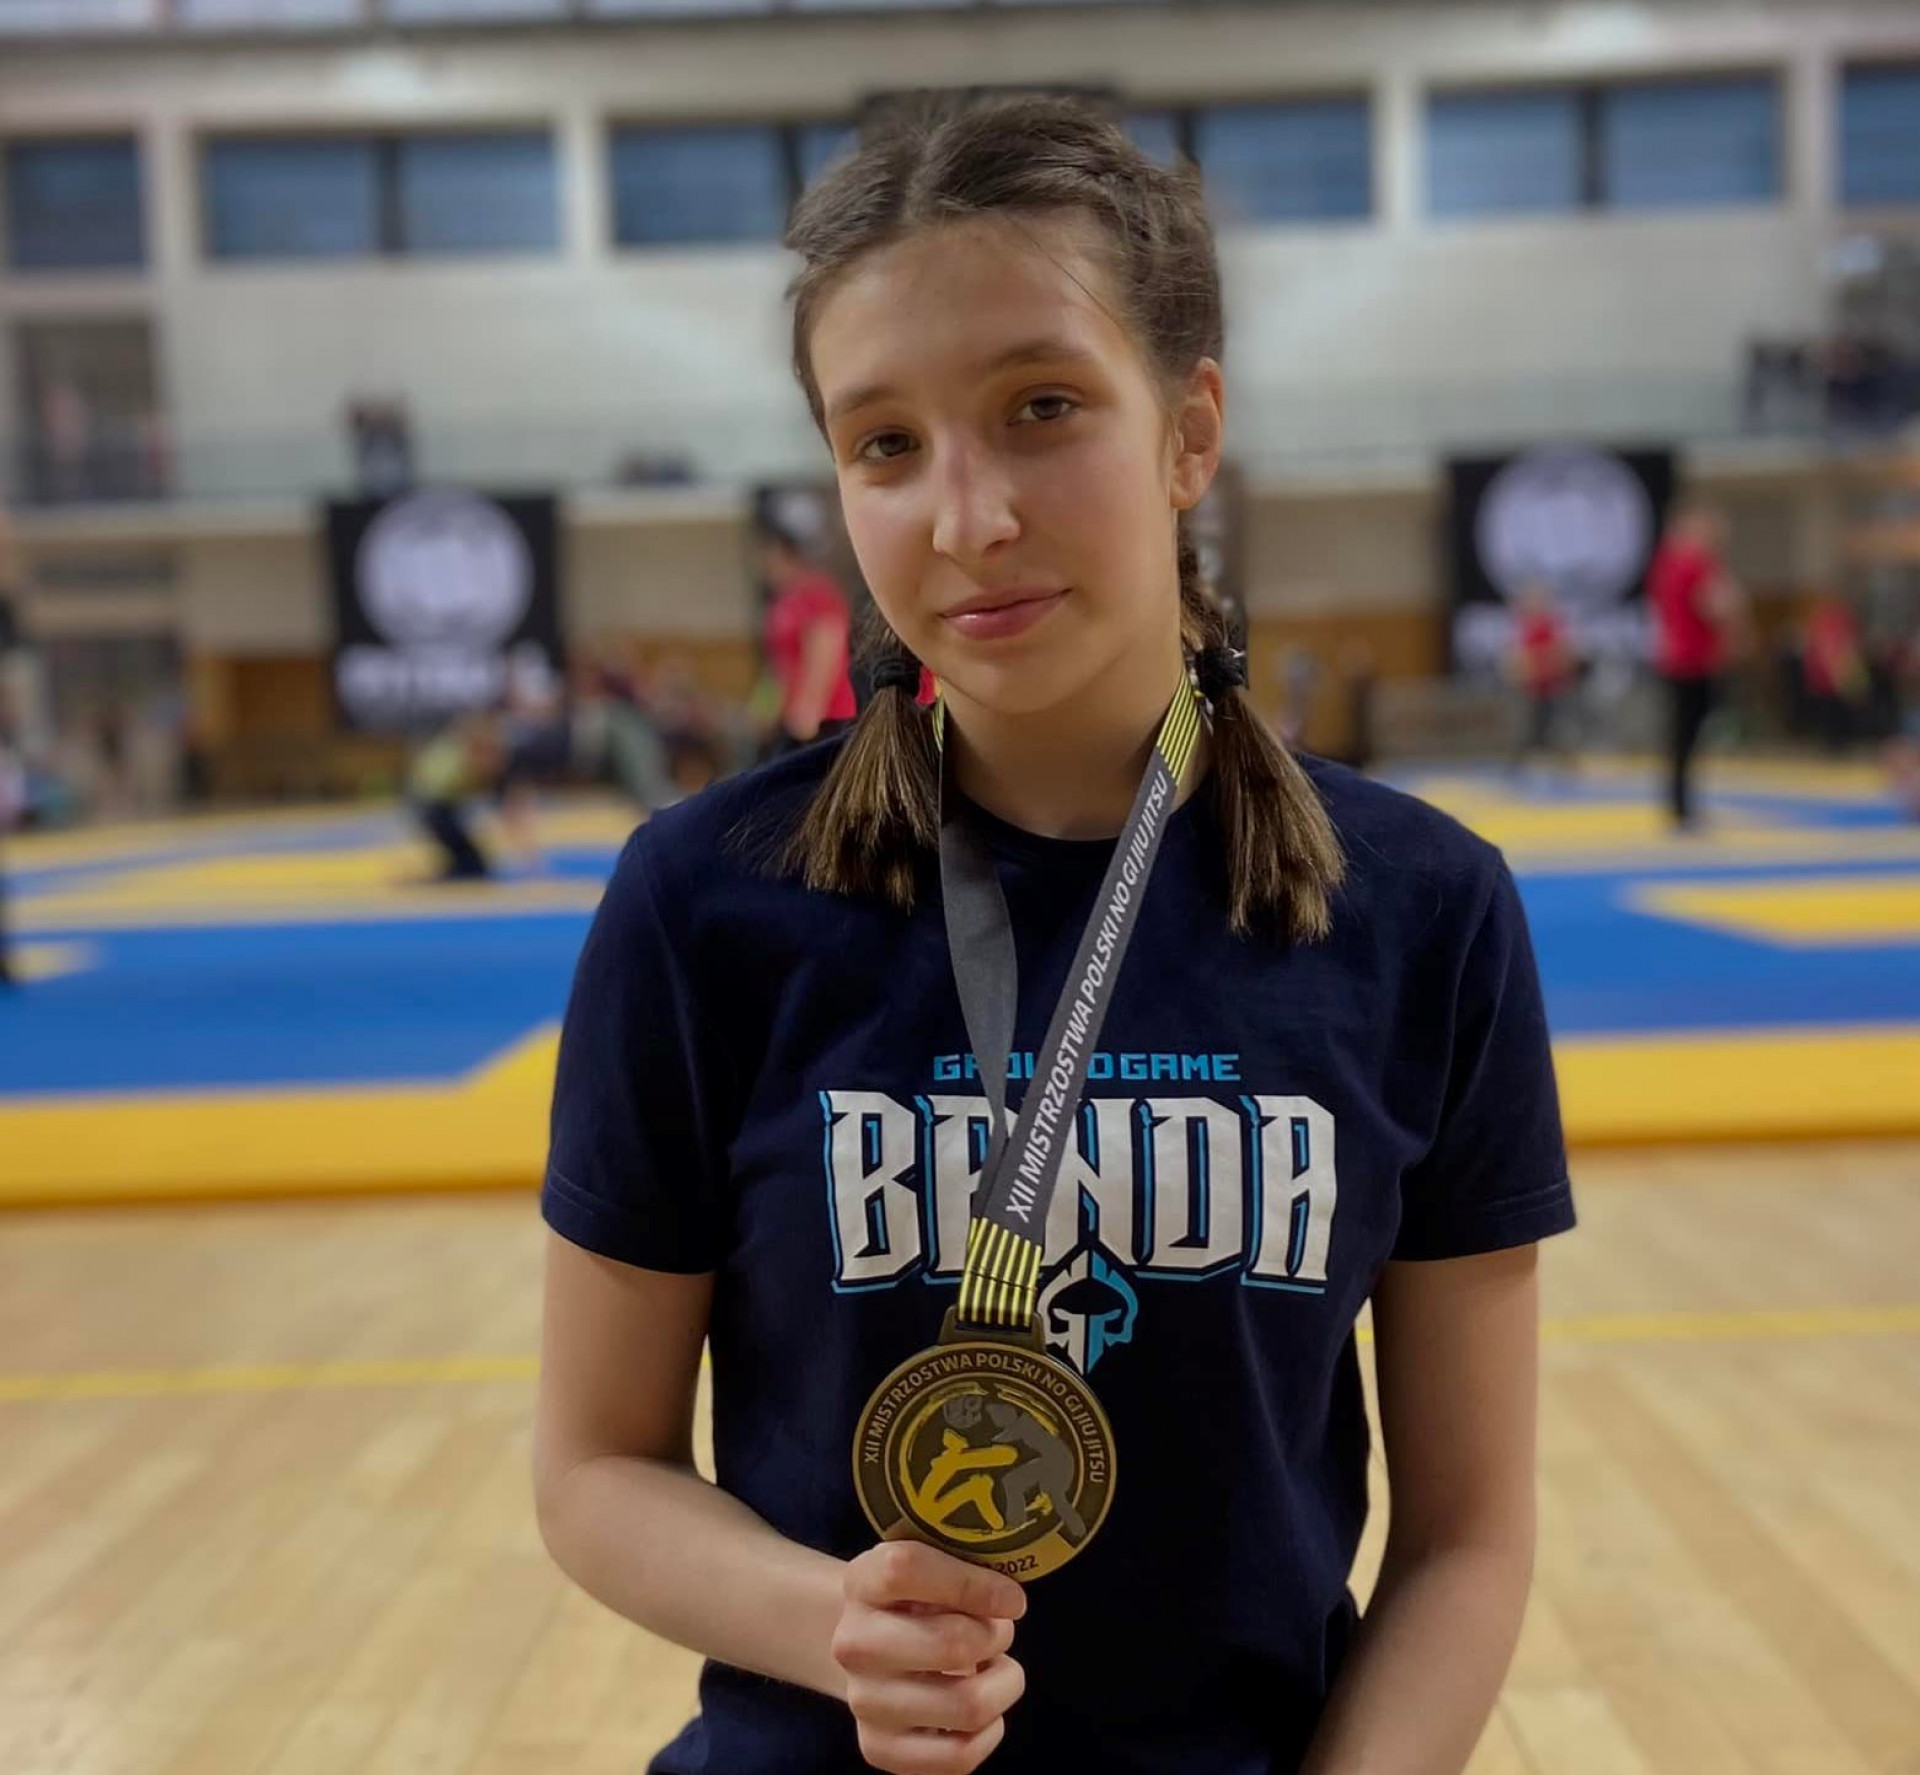 Nadia Hofman na najwyższym podium w XII Mistrzostwa Polski No Gi Jiu Jitsu 2022